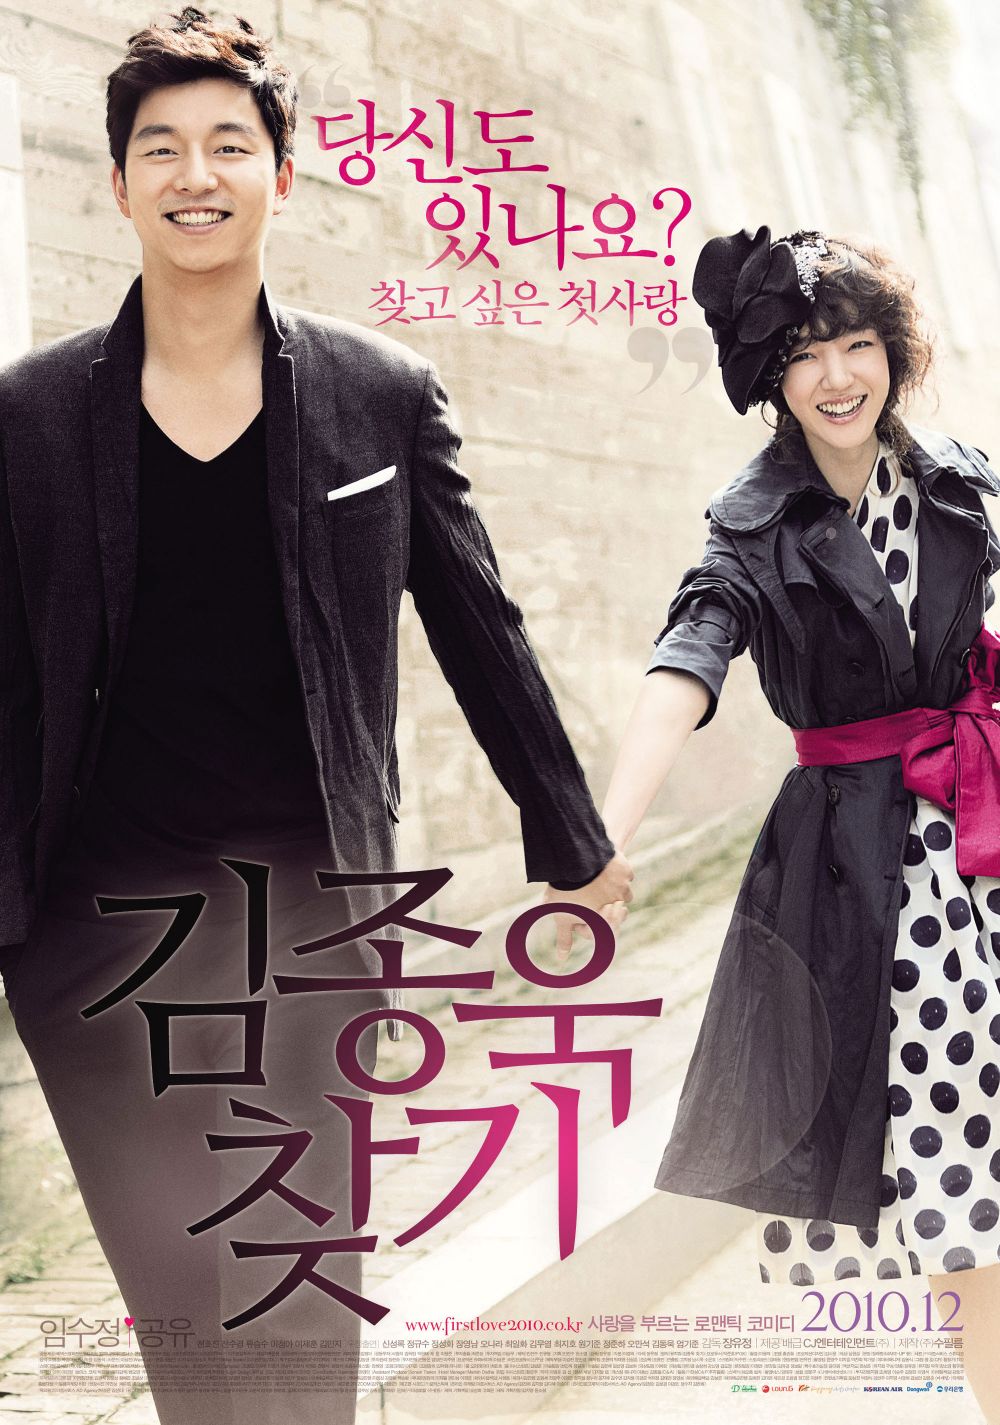 15 Film Korea komedi romantis terbaik ini layak ditonton ulang